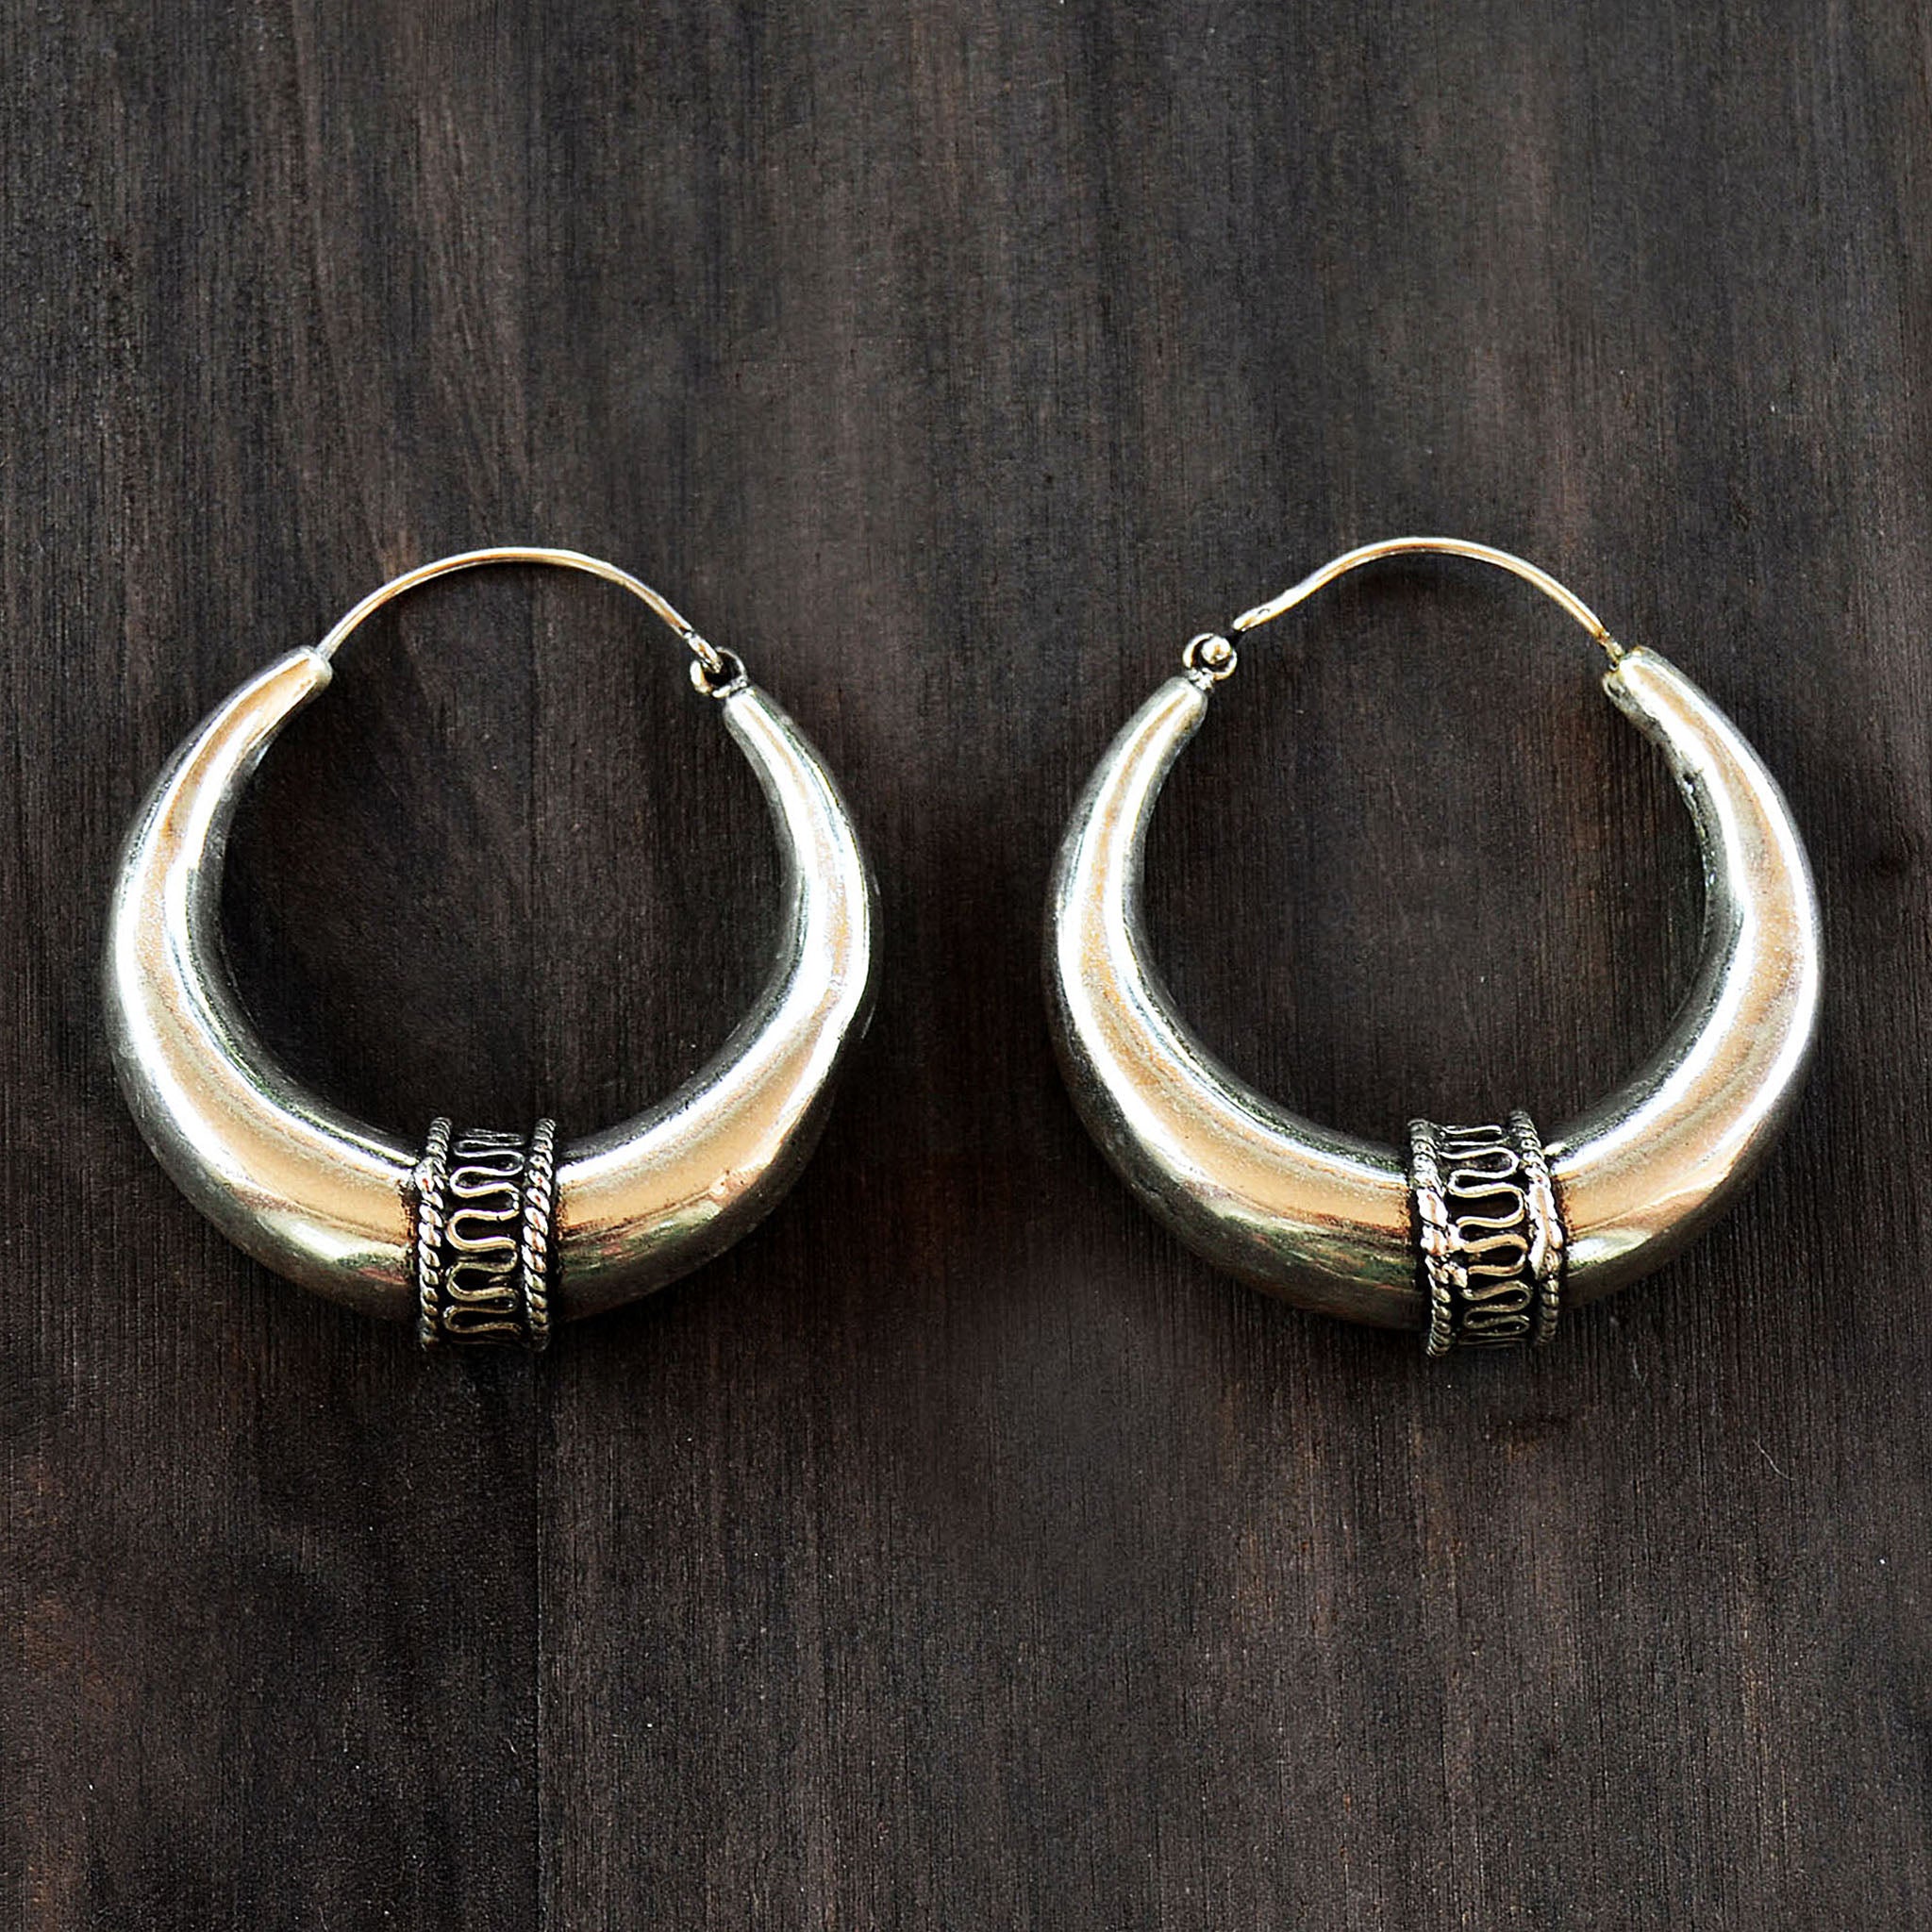 Tribal hoop earrings